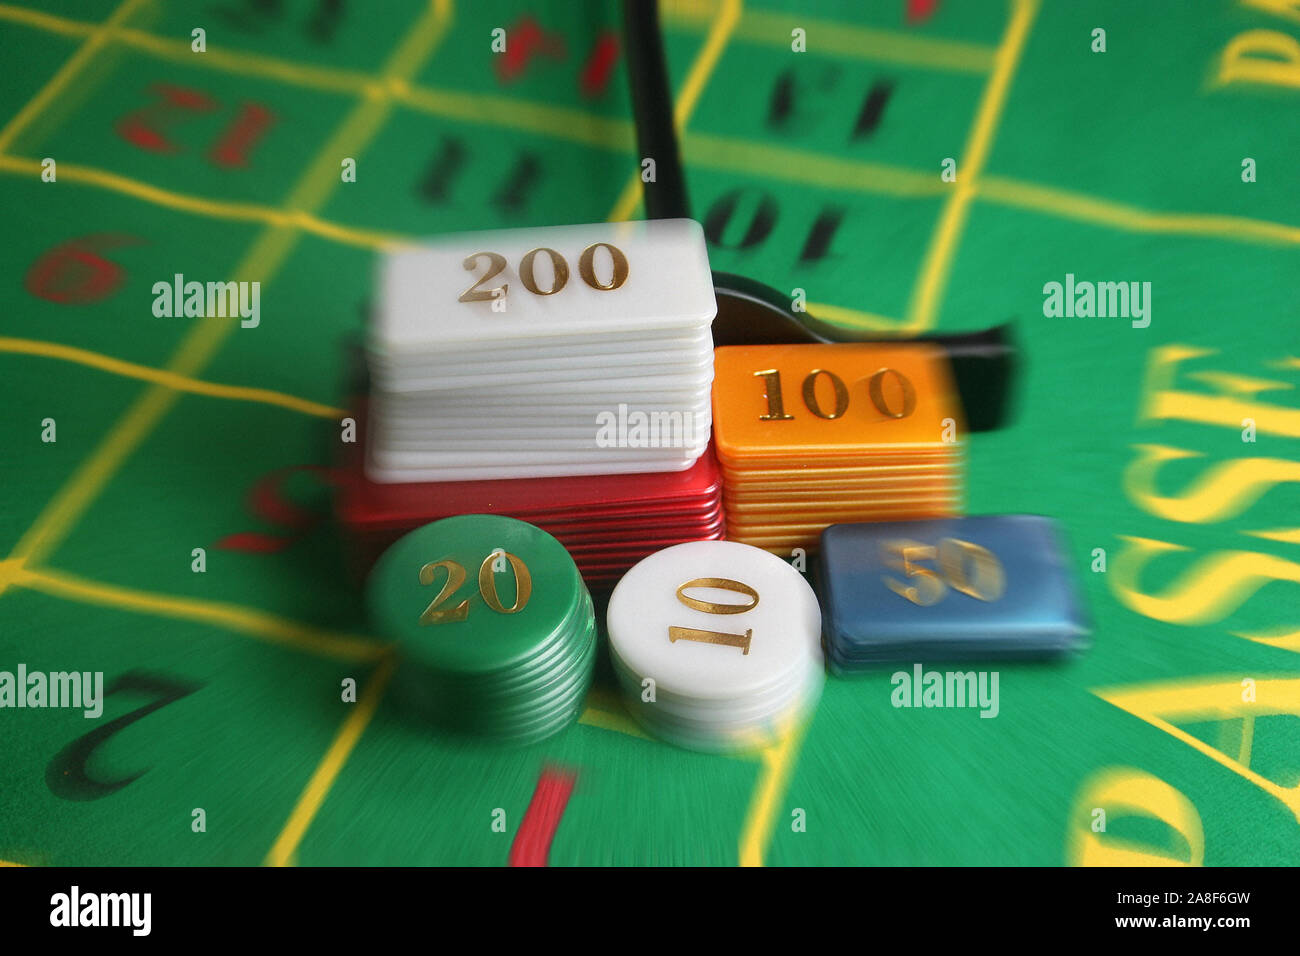 Am Roulettetisch, Spielbank, Glücksspiel, Stock Photo